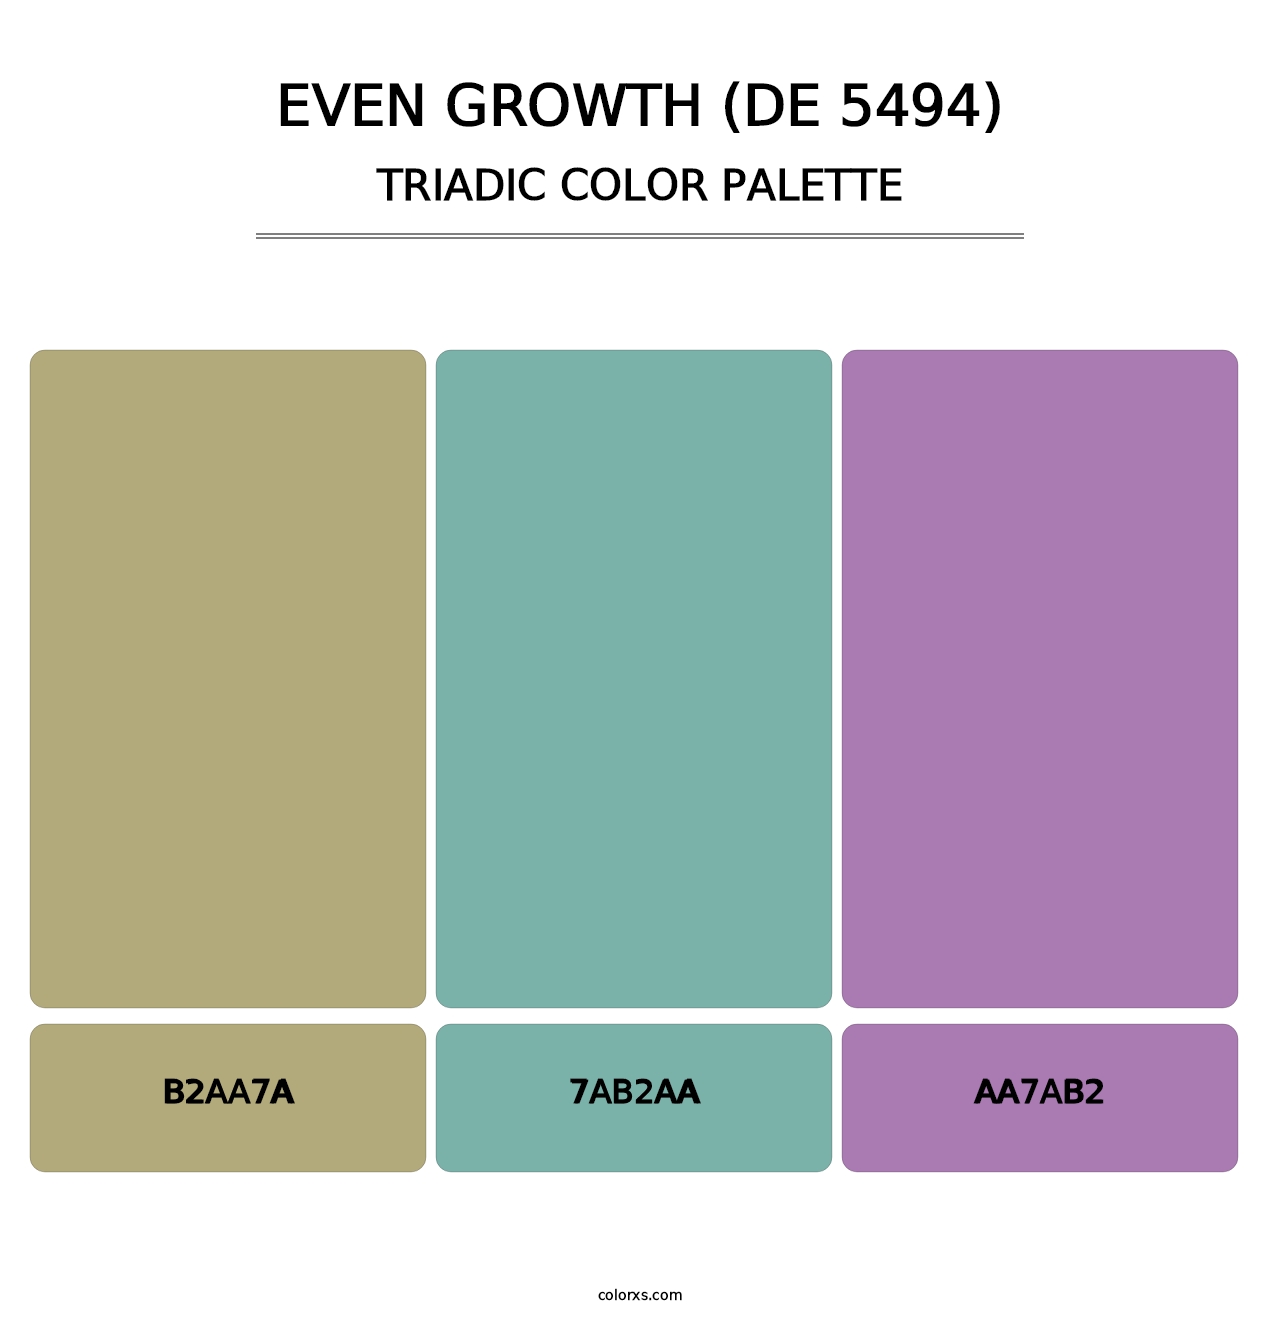 Even Growth (DE 5494) - Triadic Color Palette